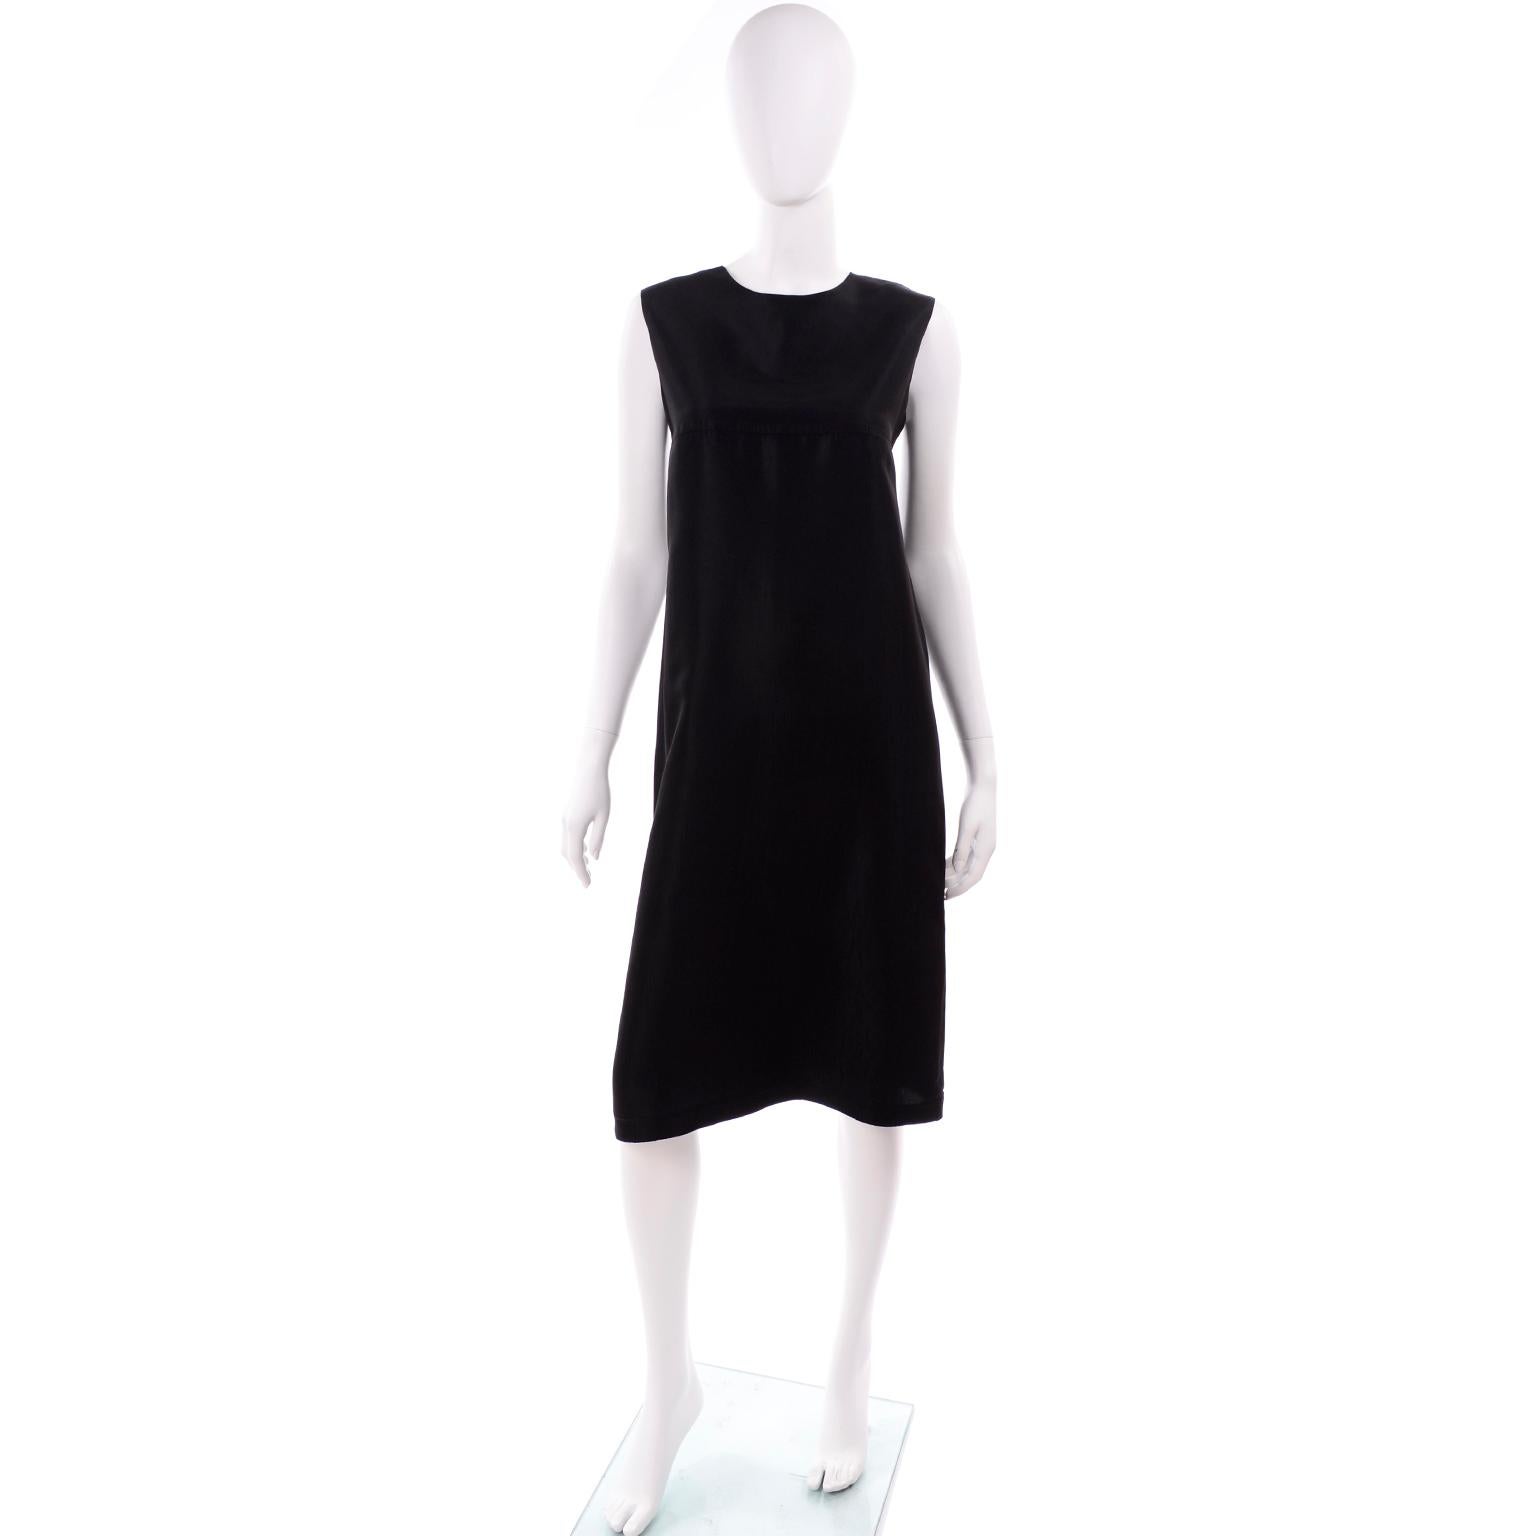 Voici une superbe robe minimaliste signée Yohji Yamamoto +Noir. Il est fabriqué dans un mélange de rayonne ou de soie noire, solide et opaque. Le tissu présente une texture subtile qui lui confère une certaine dimension. Il présente une couture au